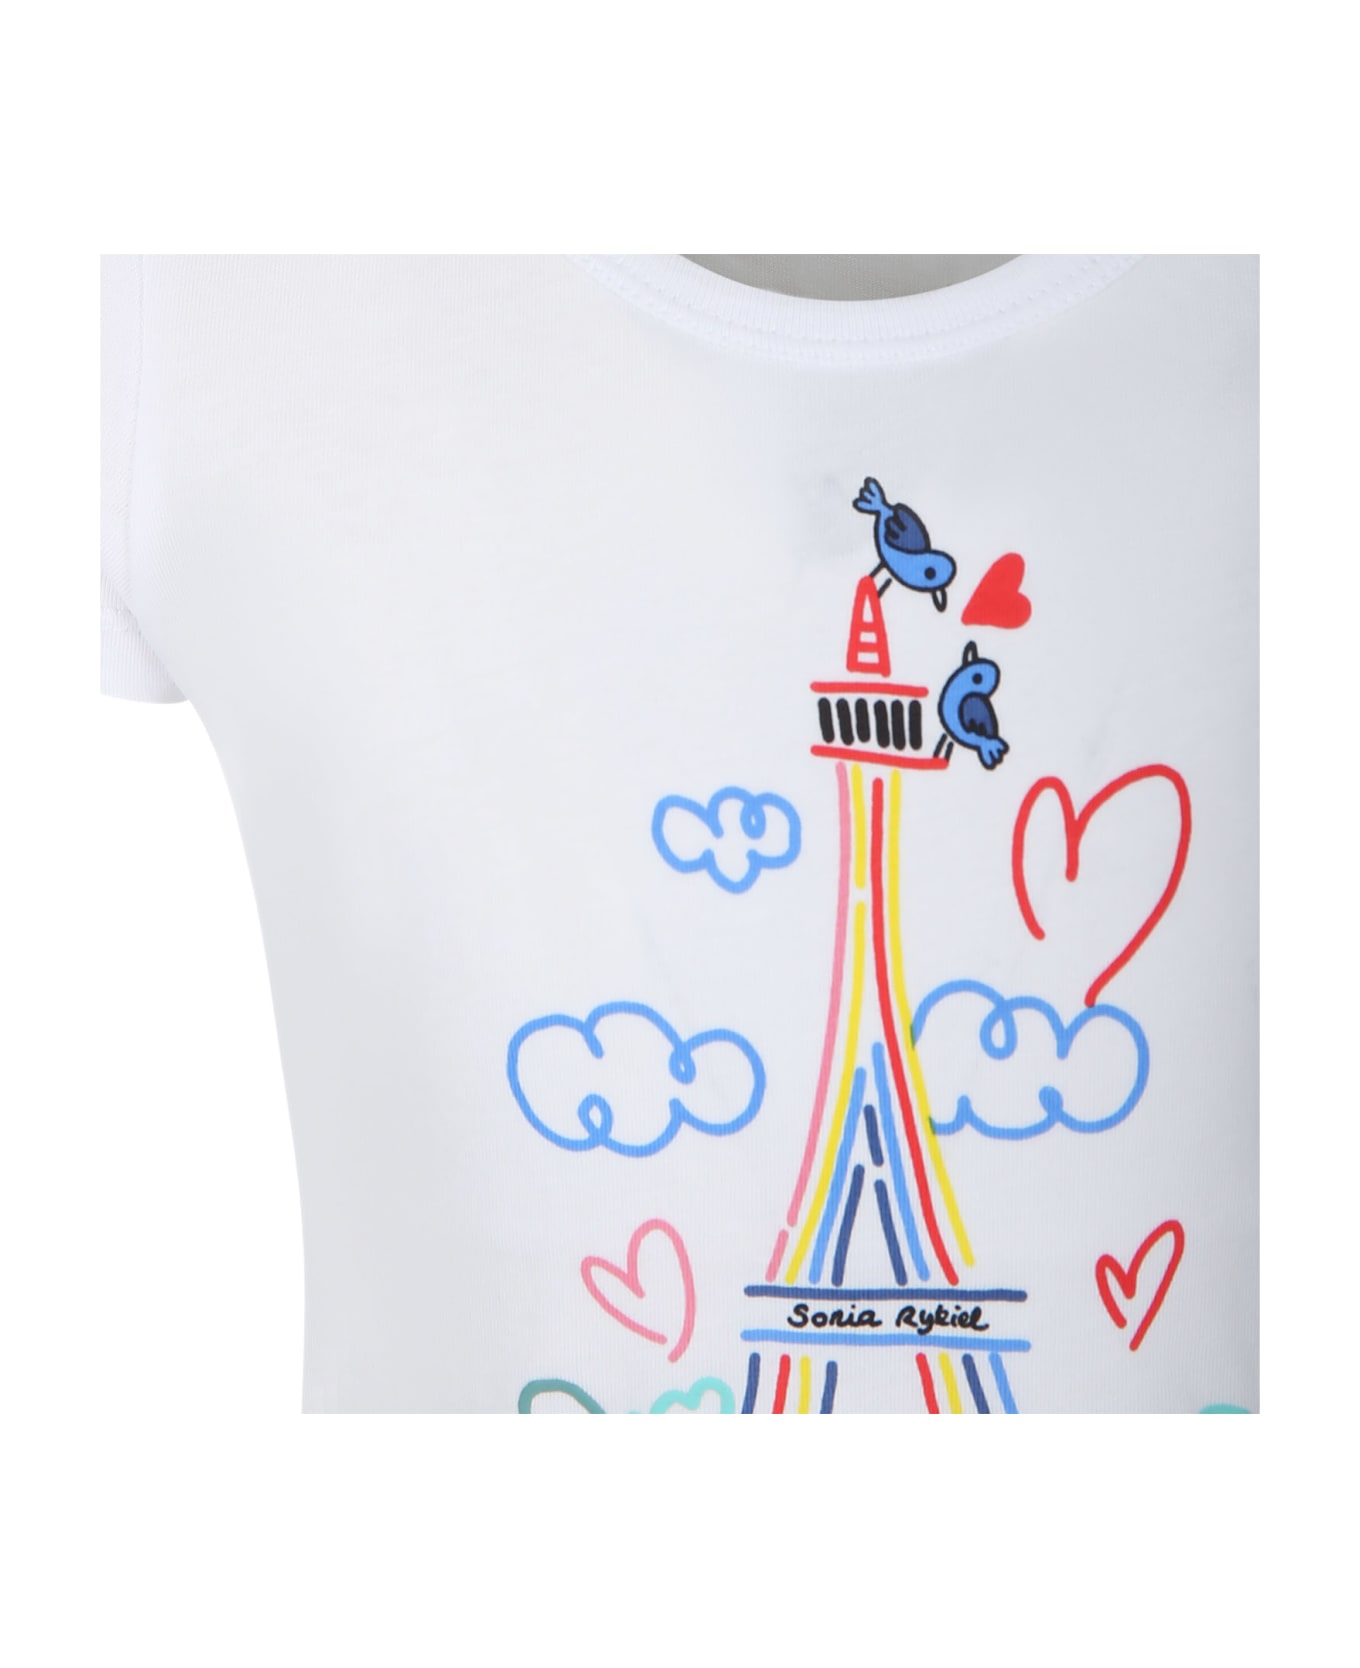 Rykiel Enfant White T-shirt For Girl With Tour Eiffel Print - White